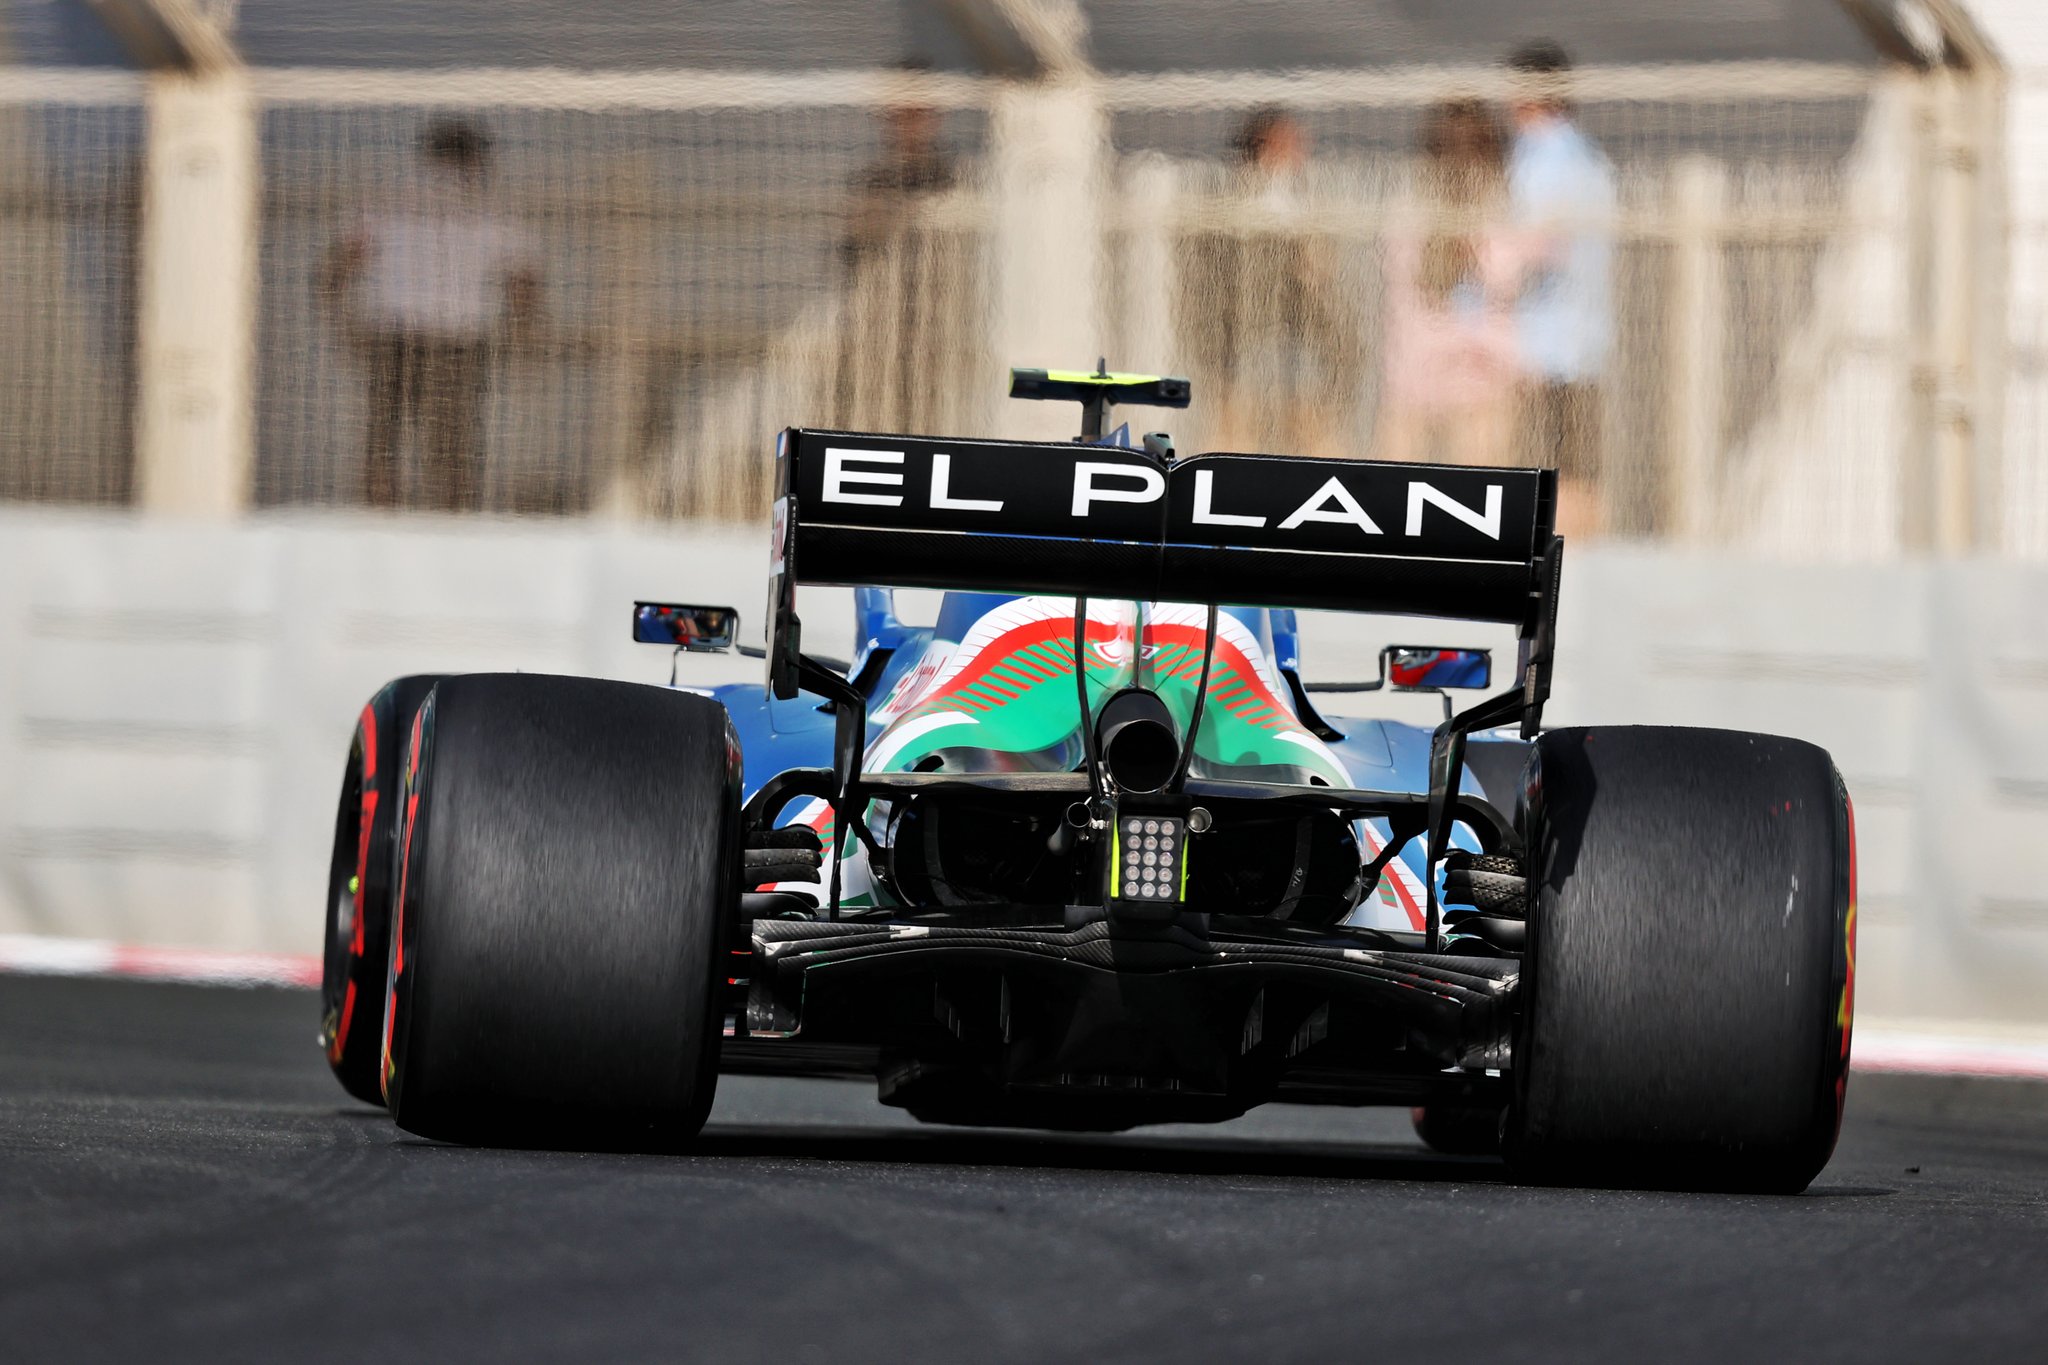 F1 - Pourquoi l'inscription "EL PLAN" sur l'Alpine à Abou Dhabi ?